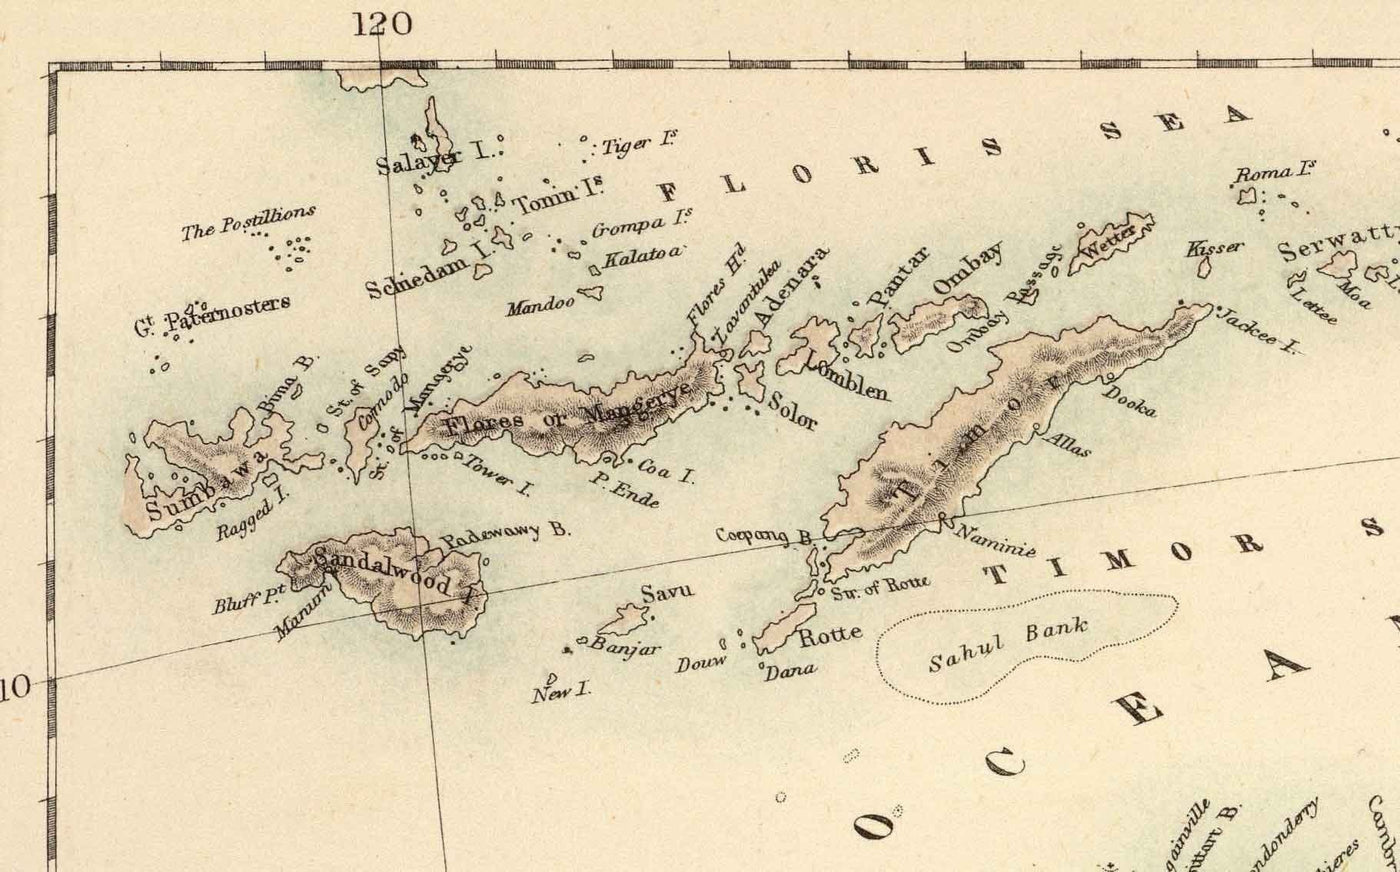 Alte Karte von Australien und Neuseeland, 1872 von Fullarton - Tasmanien, Van Diemens Land, Sydney, Auckland, Victoria, NSW